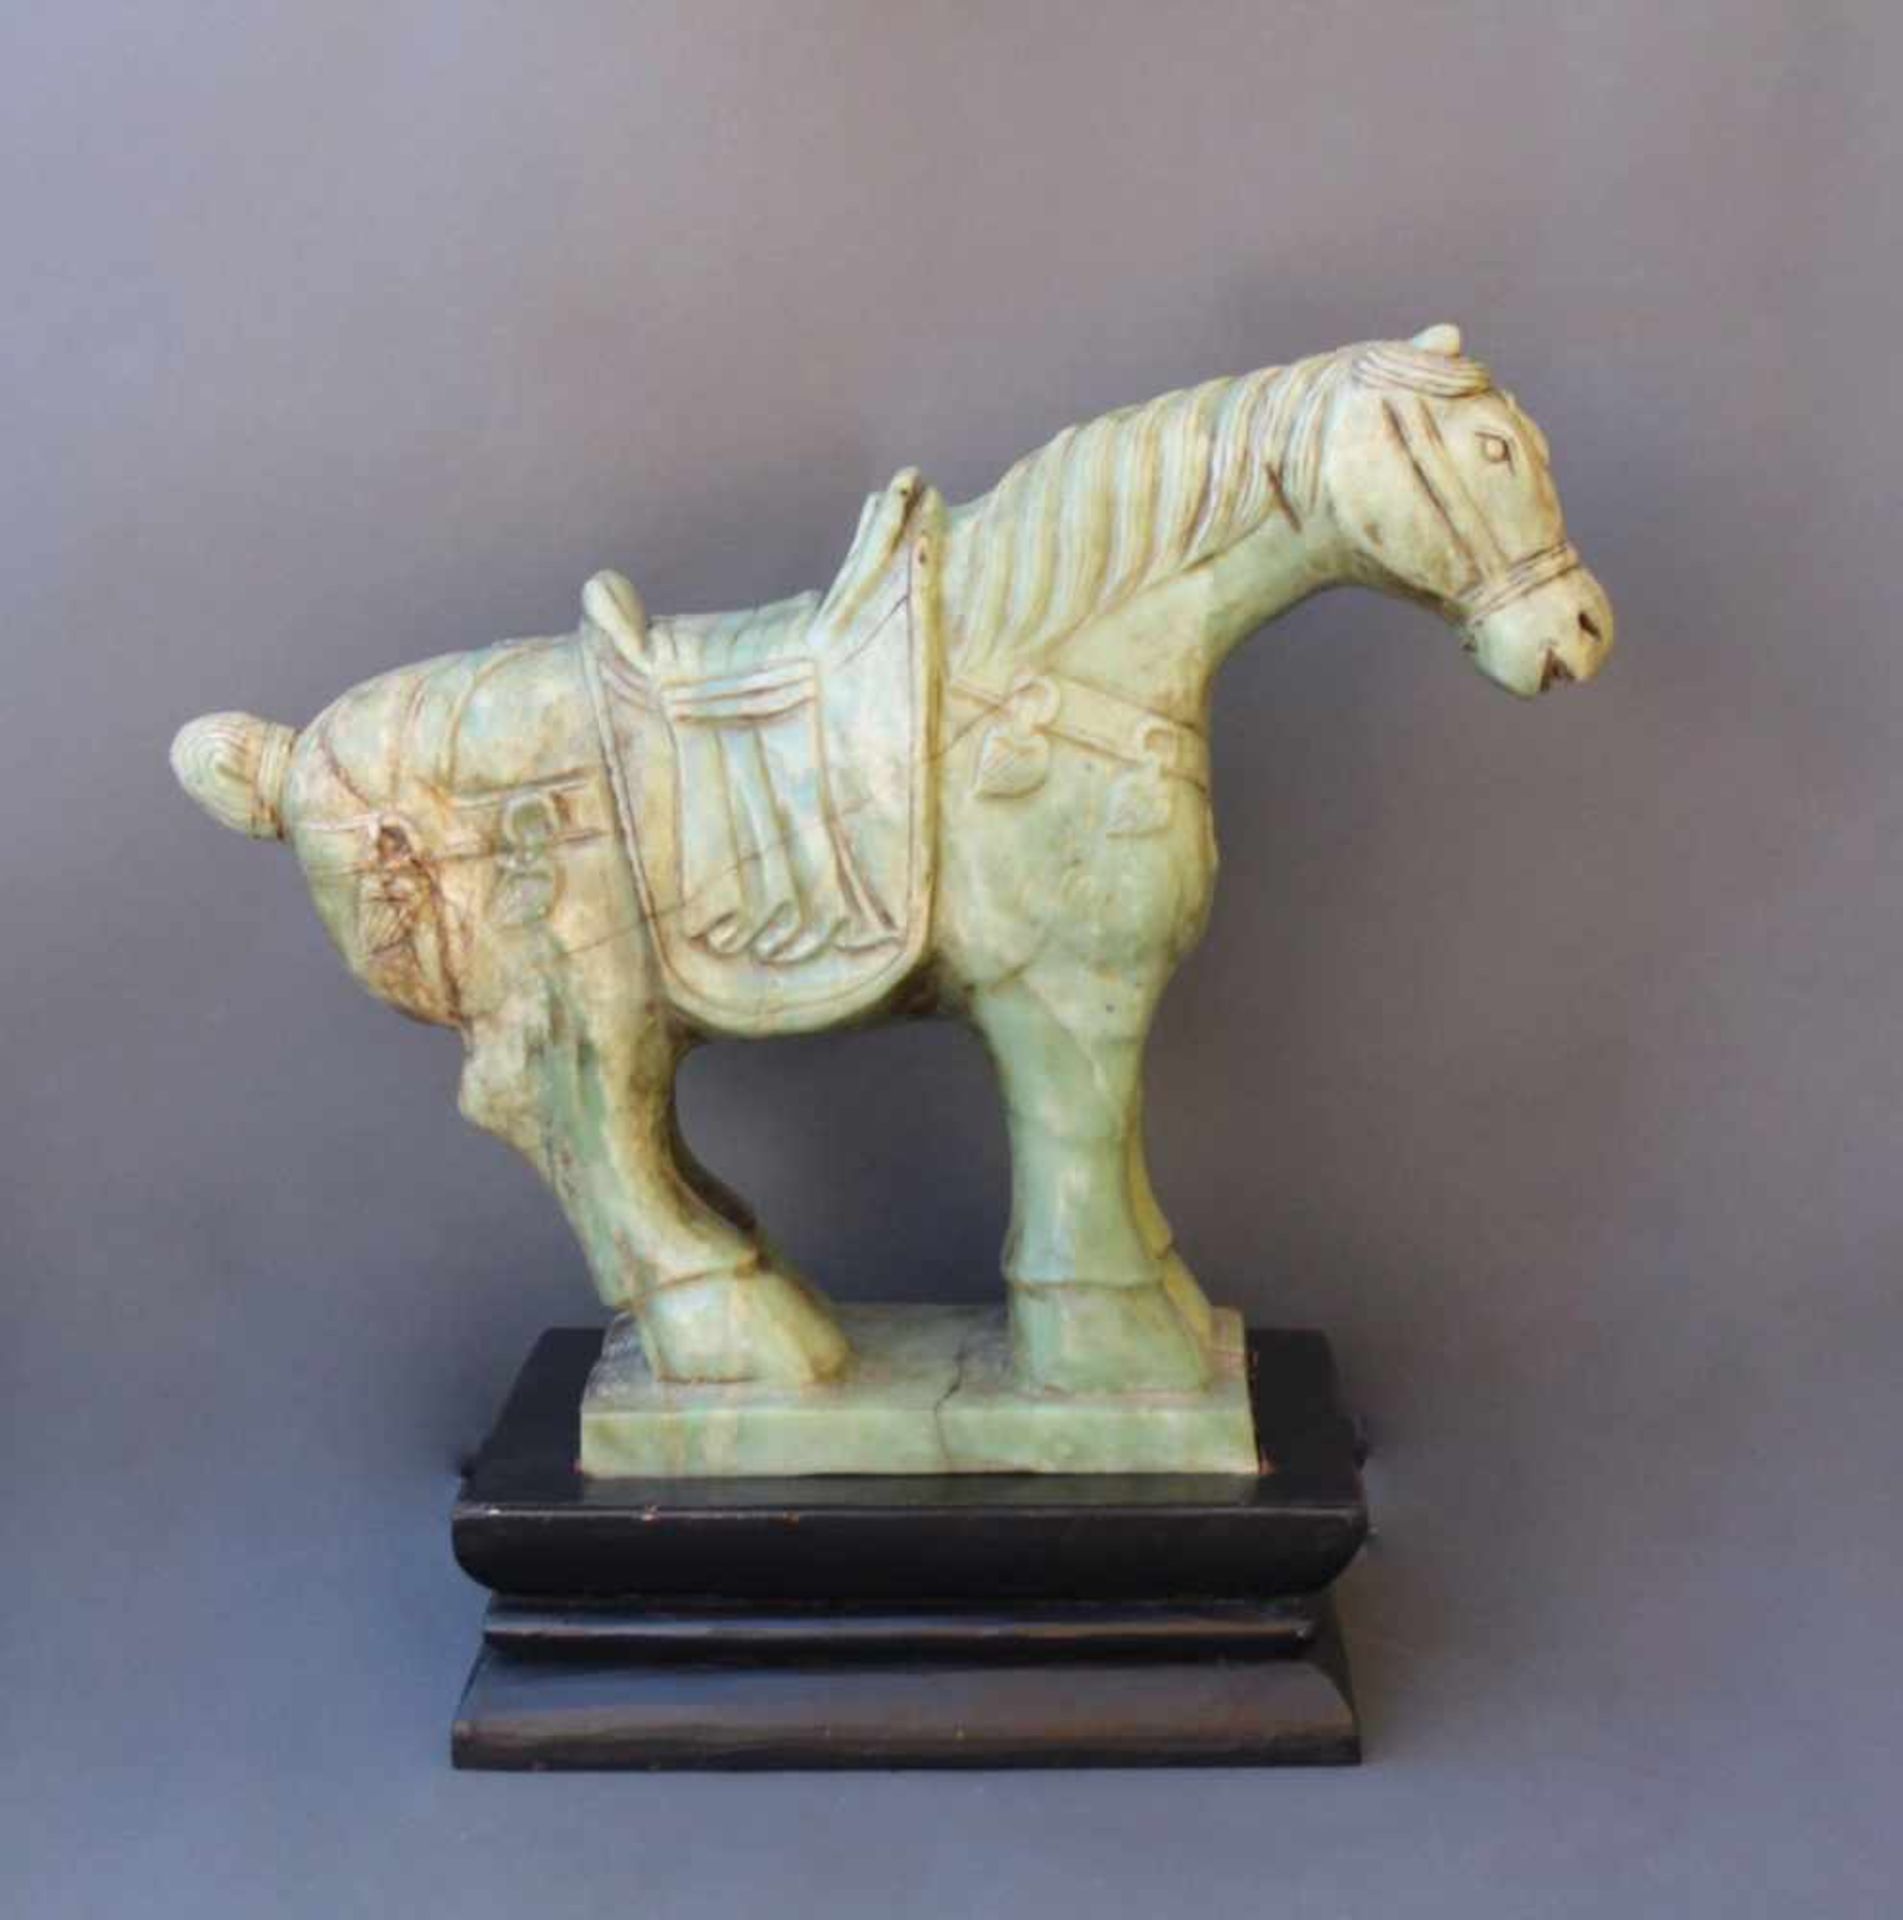 Sehr große Pferdefigur, Serpentin-JadeChina, 20. Jahrhundert, vollplastisch gearbeitetes Pferd mit - Bild 2 aus 6